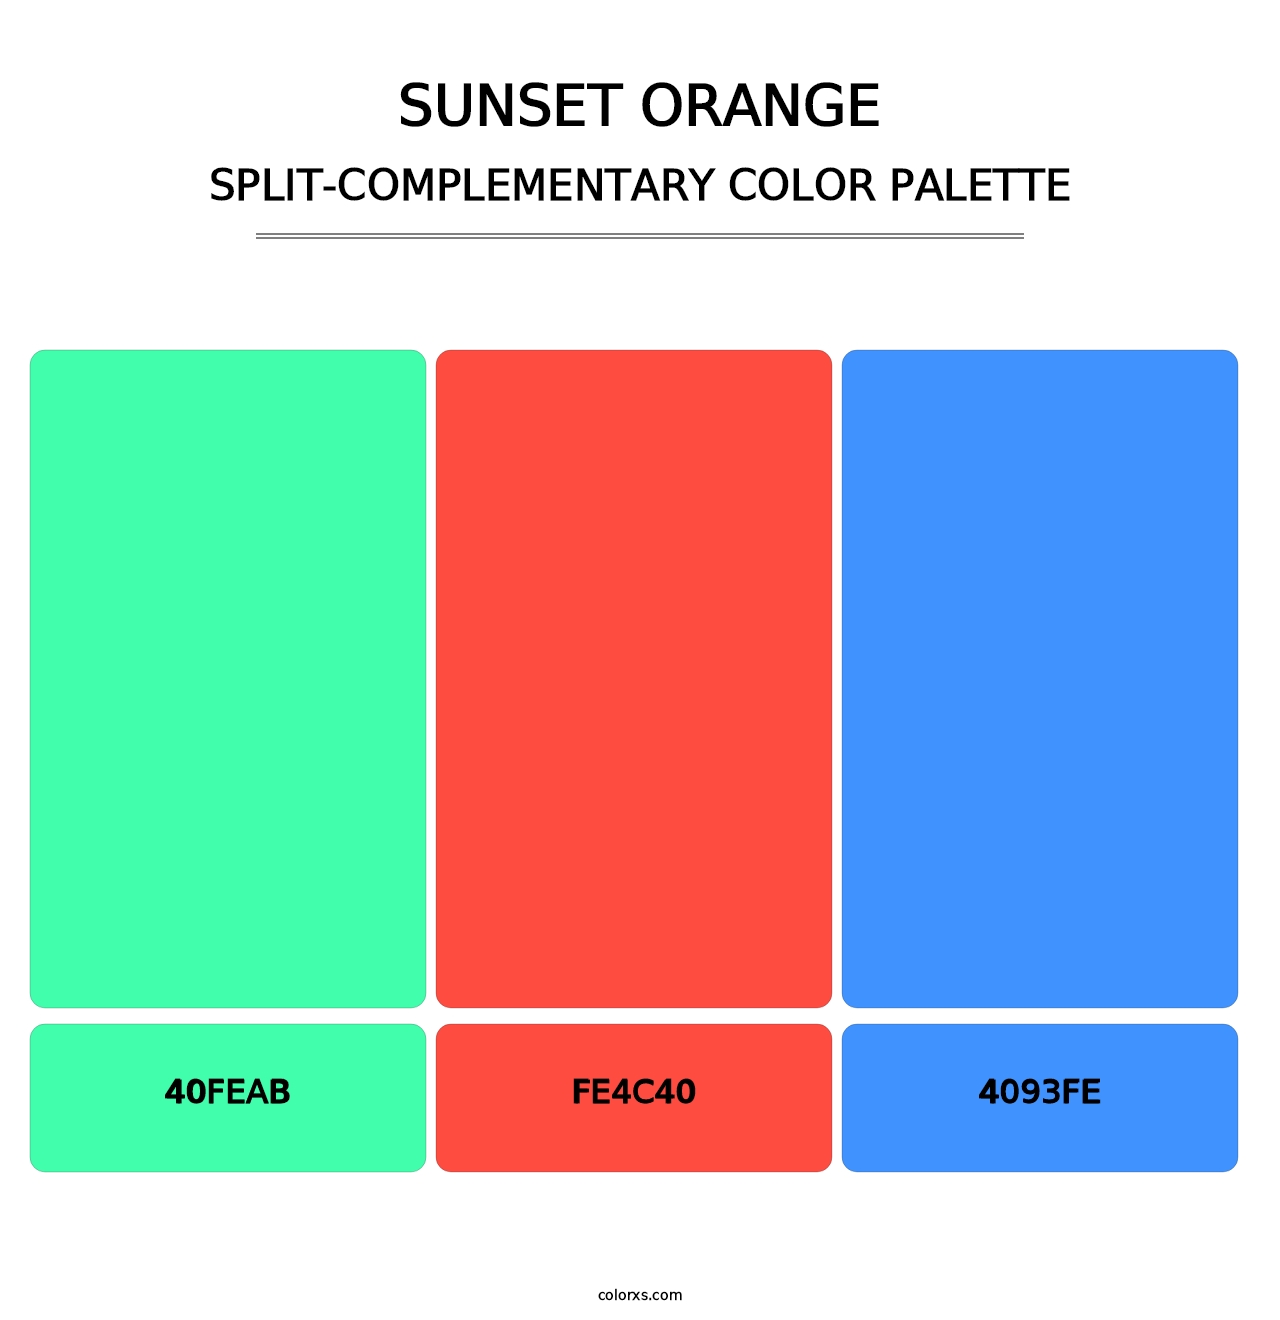 Sunset Orange - Split-Complementary Color Palette